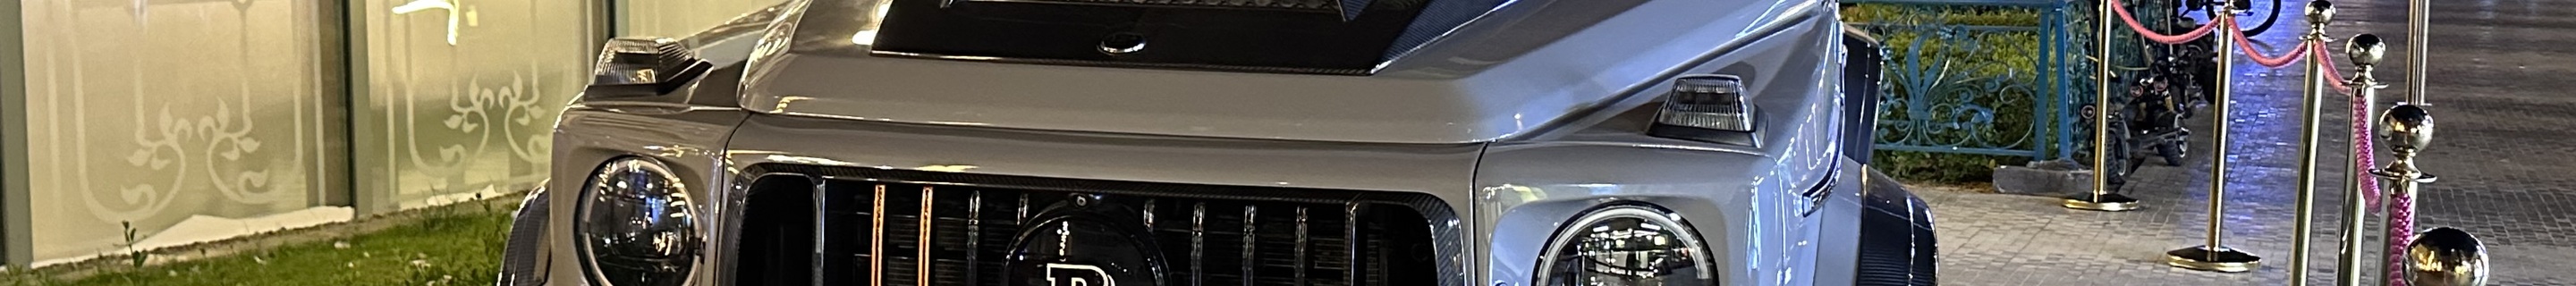 Mercedes-AMG Brabus G 900 Rocket W463 2018